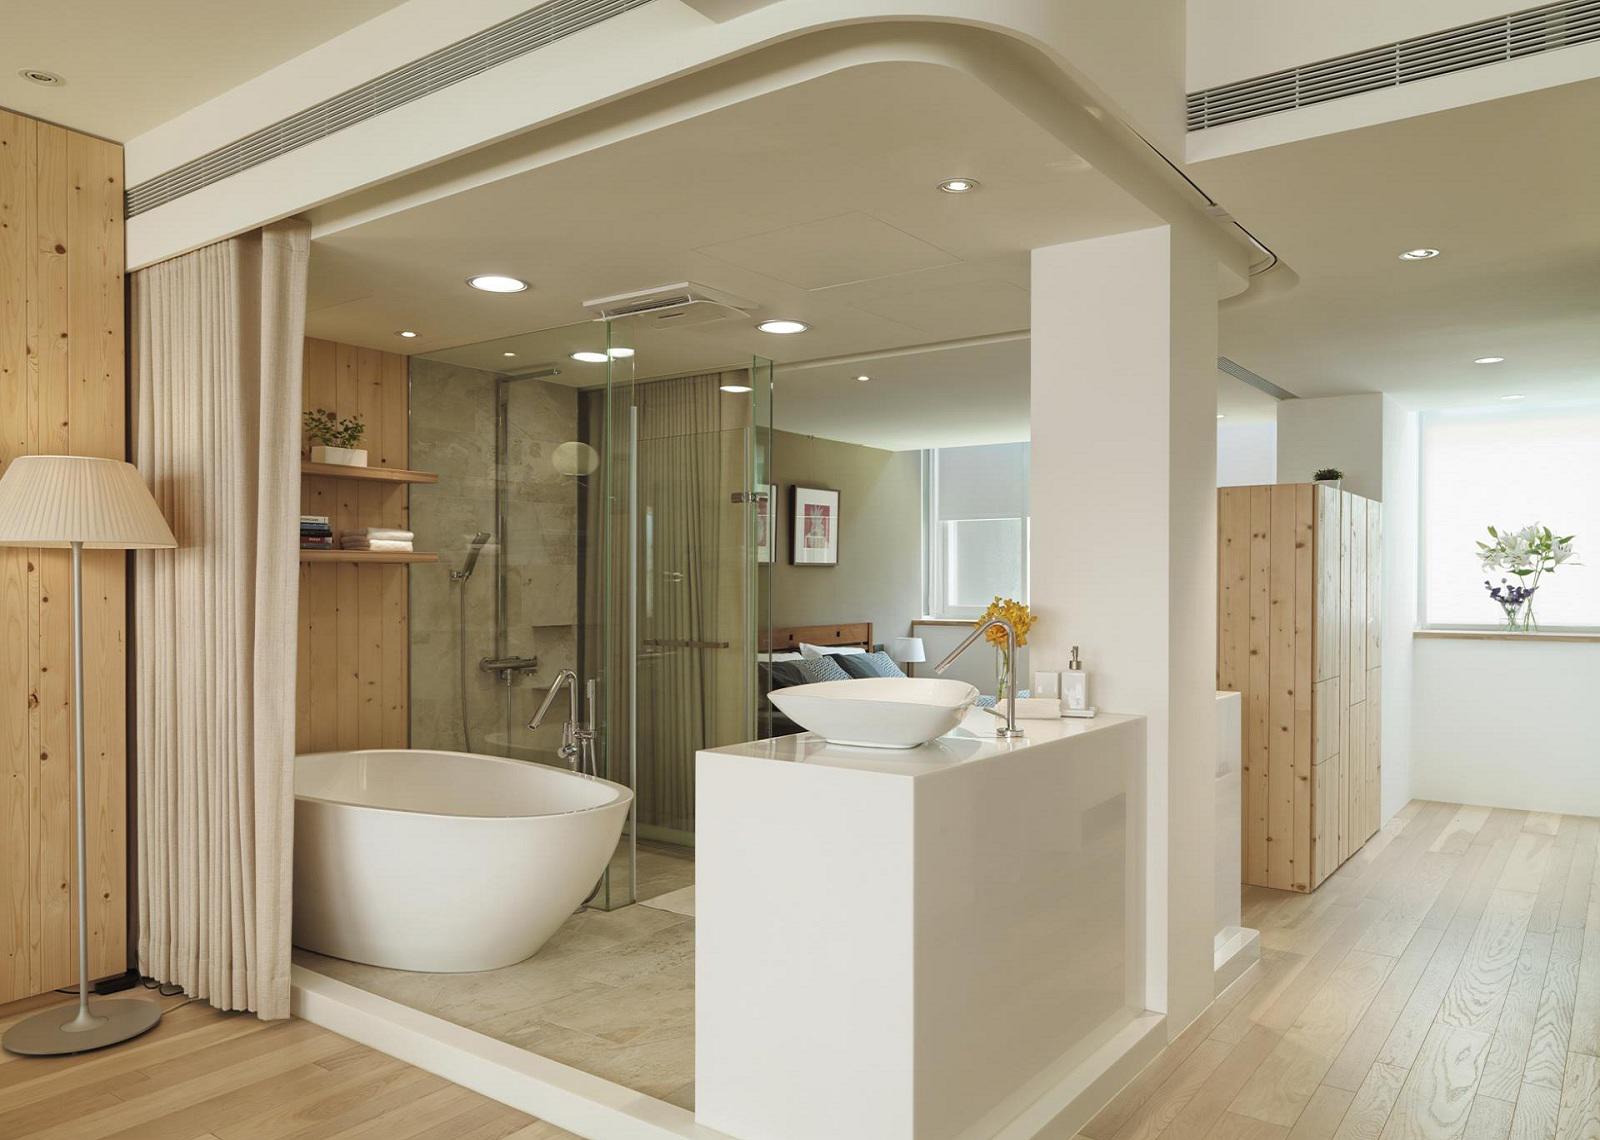 个性创意日式开放式家居浴室拉帘设计